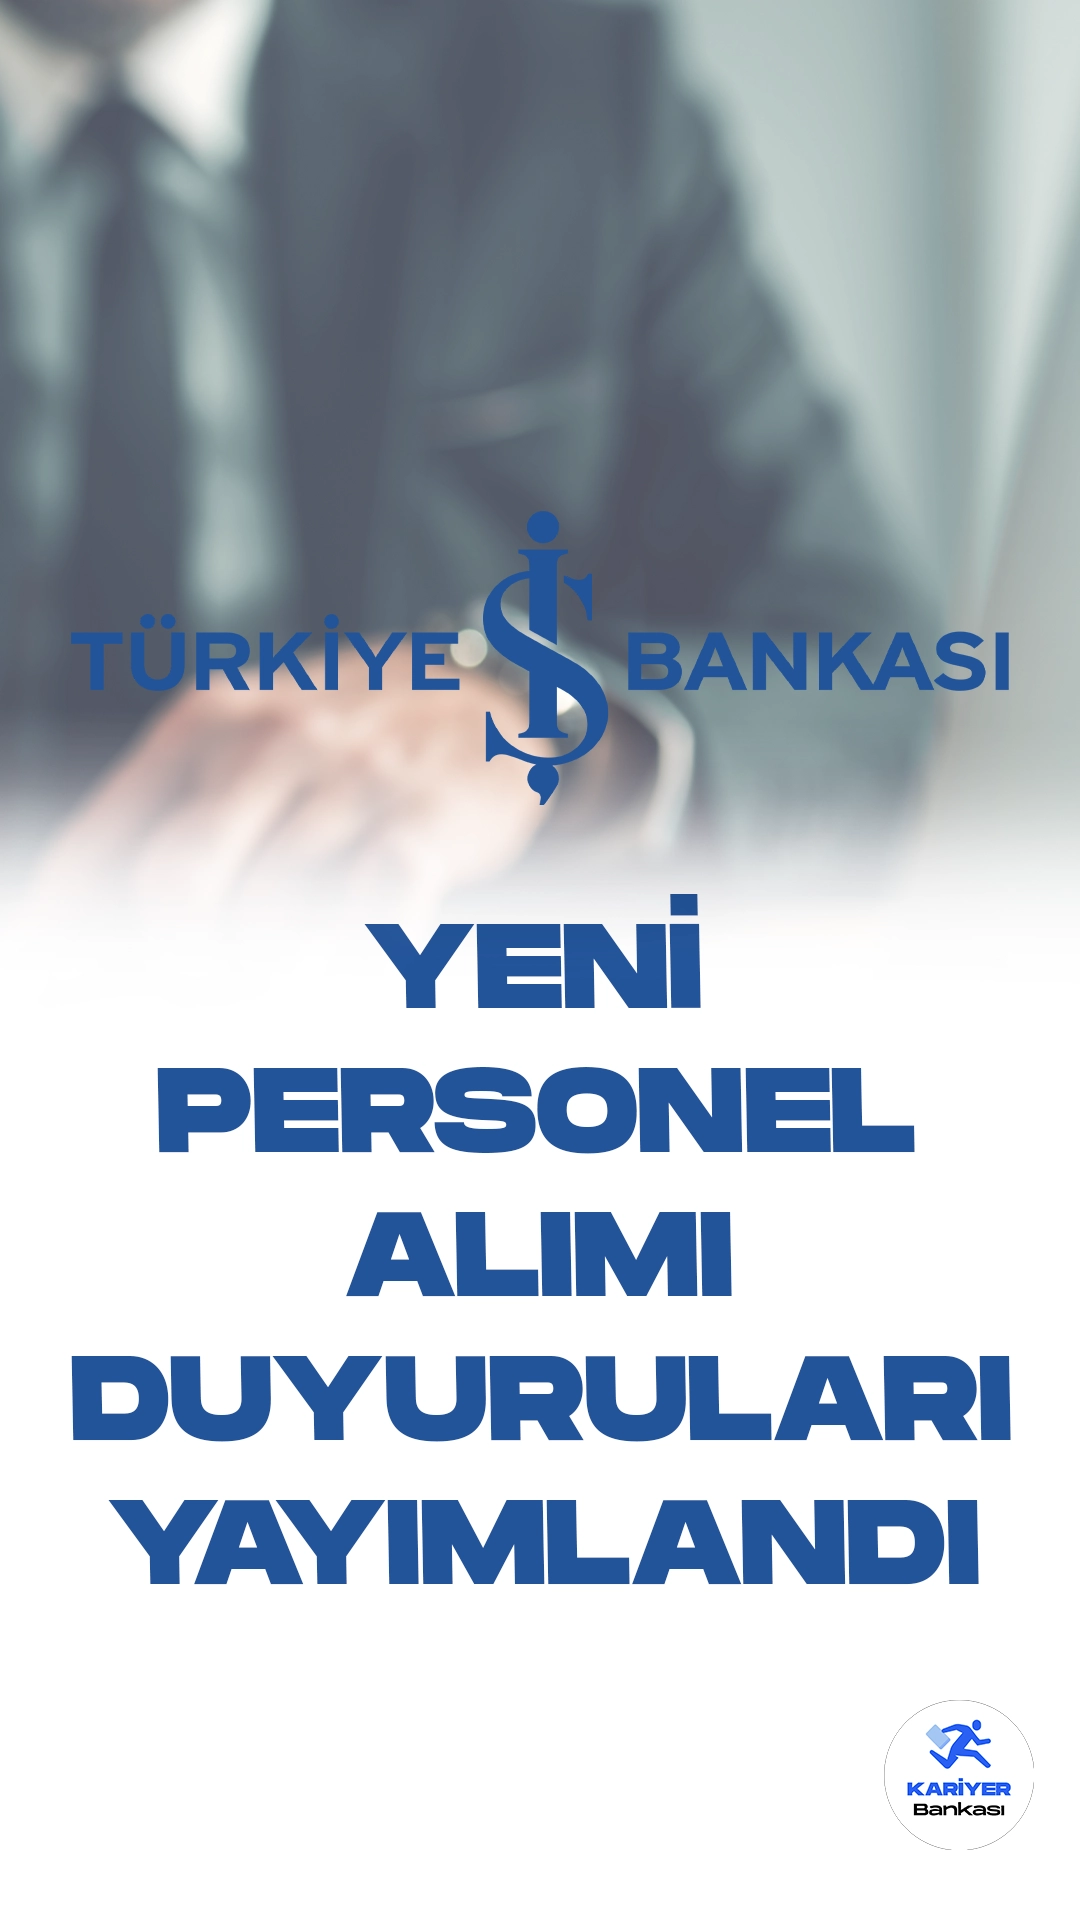 İş Bankası Güvenlik ve Şoför Alımı Yapacak. Türkiye İş Bankası kariyer sayfası üzerinden yeni personel alımı duyuruları yayımlandı. İlgili alım duyurulara göre, İş Bankası şubelerinden görevlendirilmek üzere özel güvenlik görevlisi ve şoför alınacak. Başvuru yapacak adayların belirtilen başvuru şartlarını dikkatle incelemesi gerekmektedir.